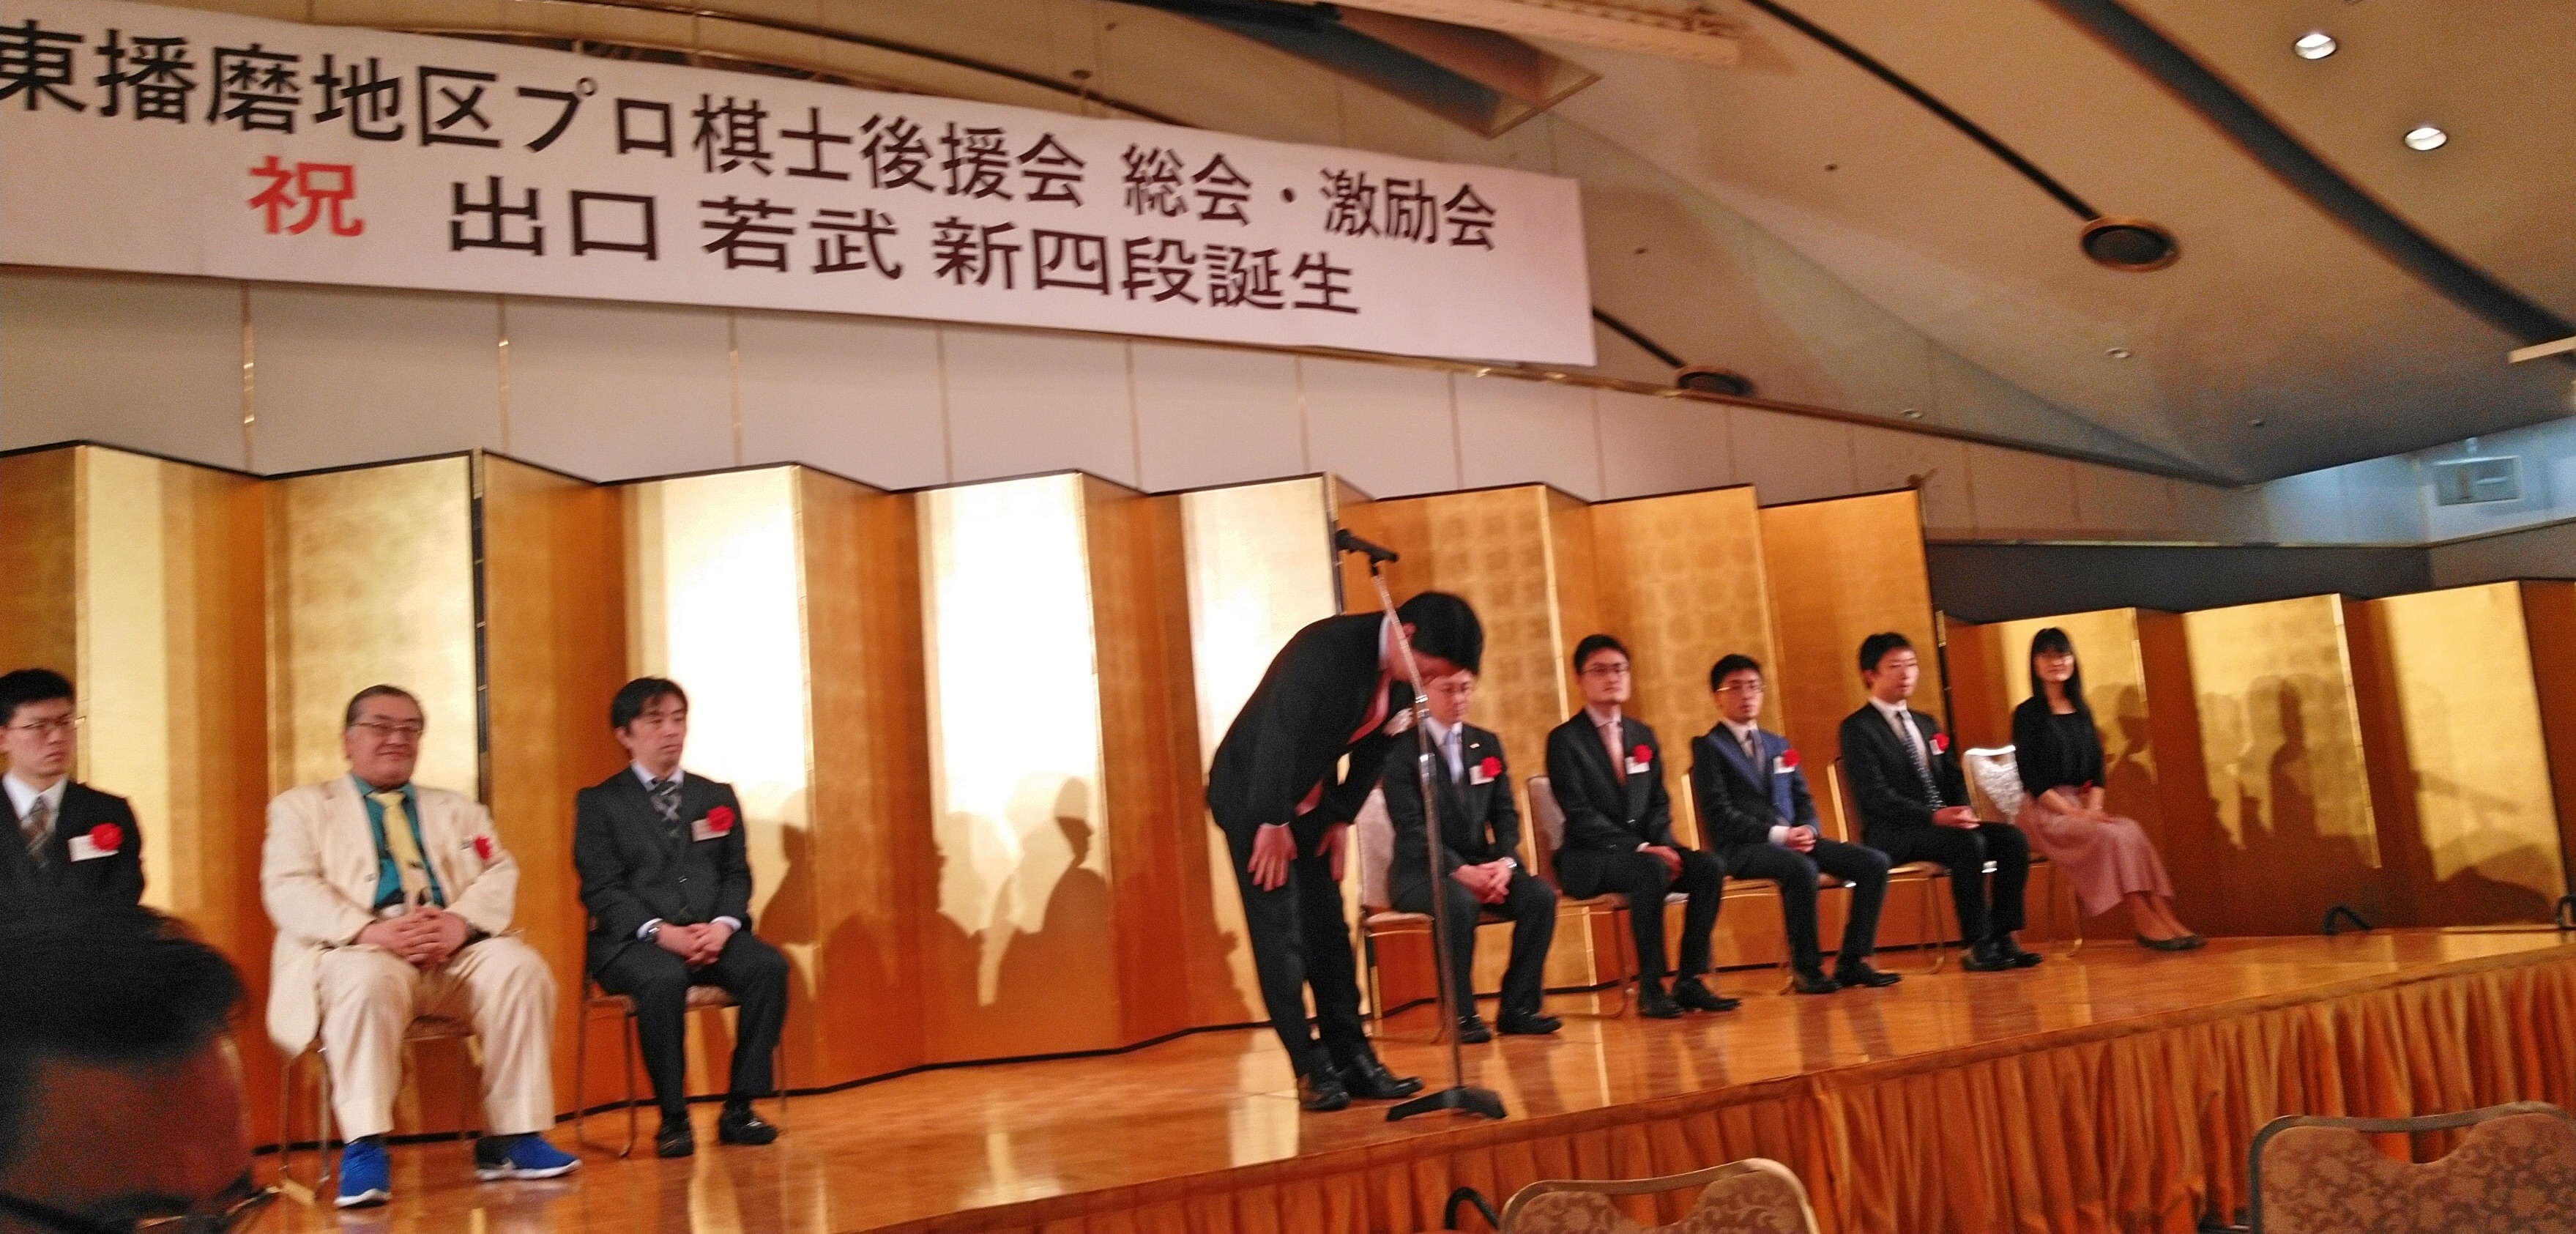 2019年5月3日(金、憲法記念日) 第11回東播磨地区プロ棋士後援会総会に出席